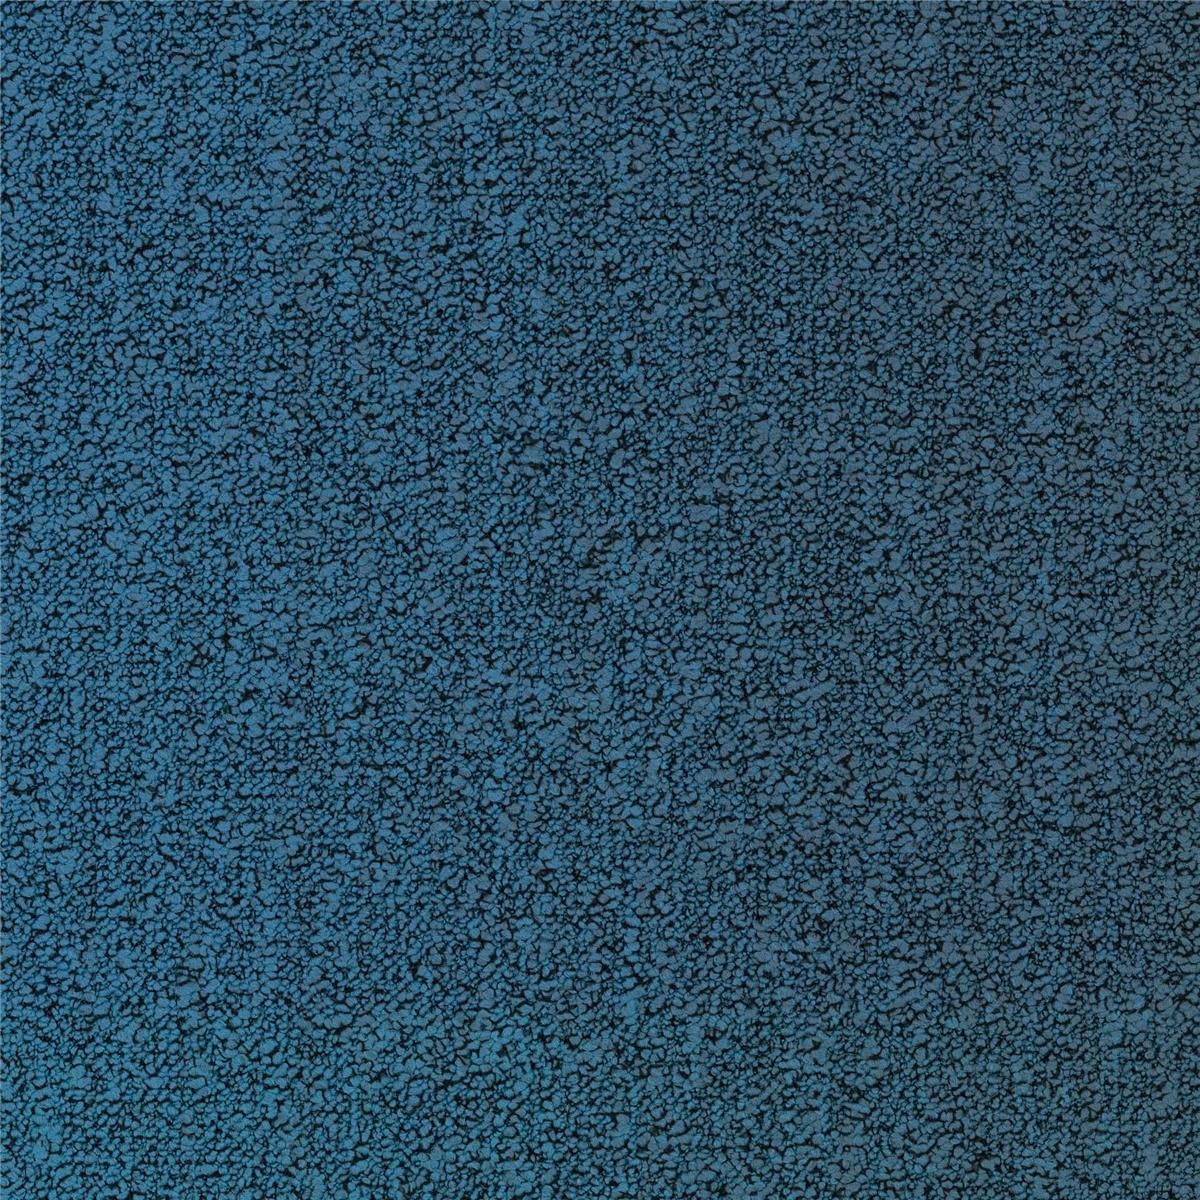 Teppichfliesen Blau 8423 Schlinge strukturiert 50 x 50 cm Fuse Landscape B755 Desso